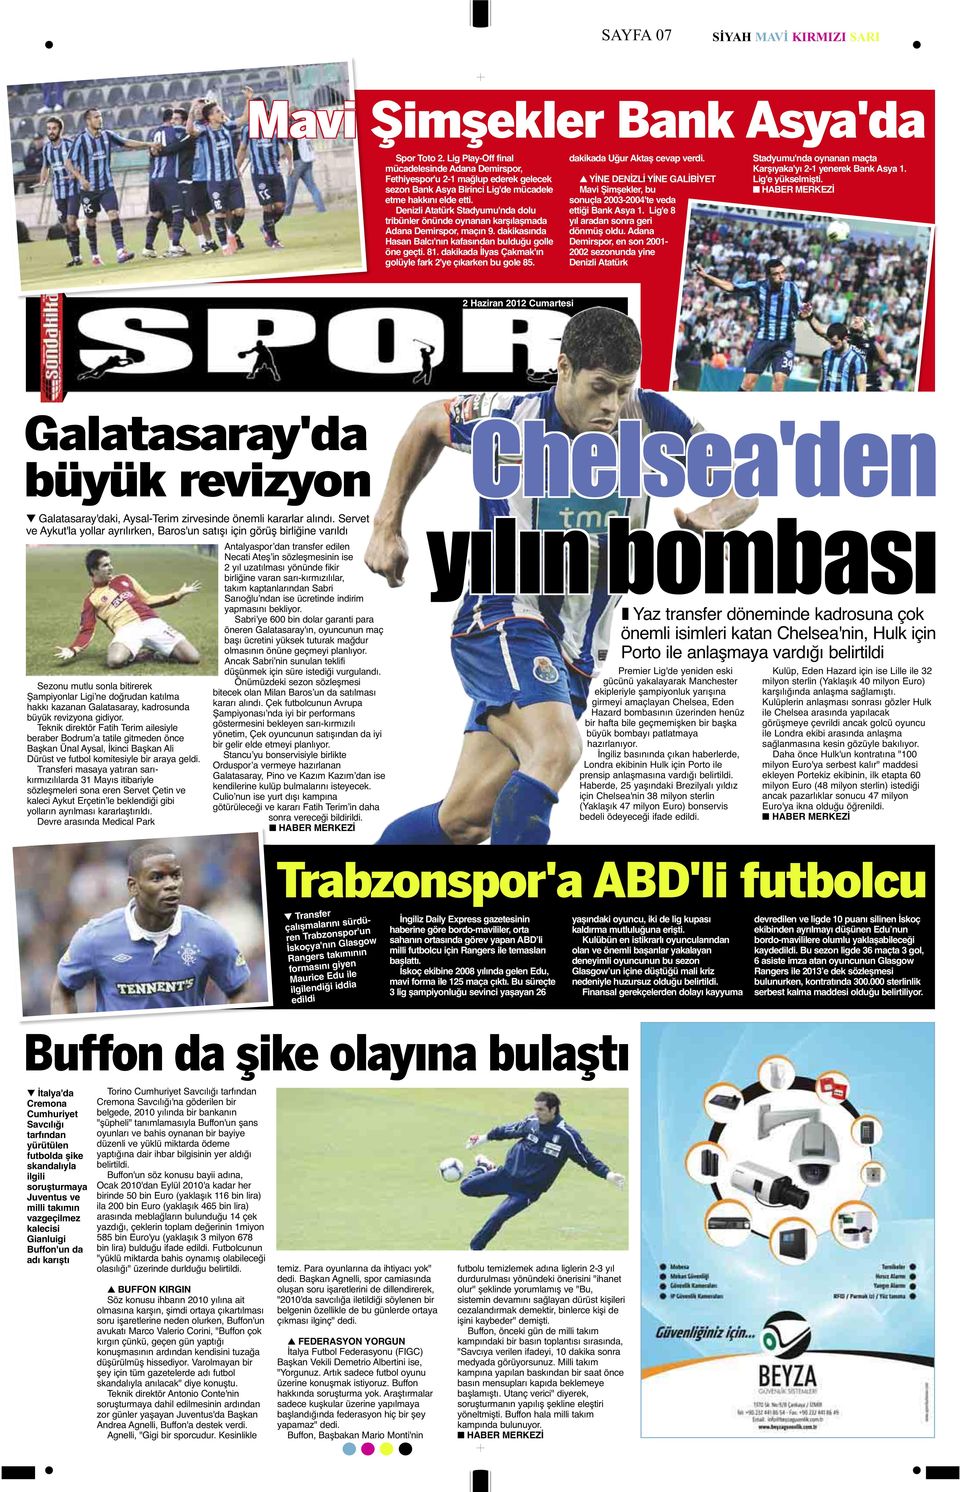 Denizli Atatürk Stadyumu'nda dolu tribünler önünde oynanan karşılaşmada Adana Demirspor, maçın 9. dakikasında Hasan Balcı'nın kafasından bulduğu golle öne geçti. 81.